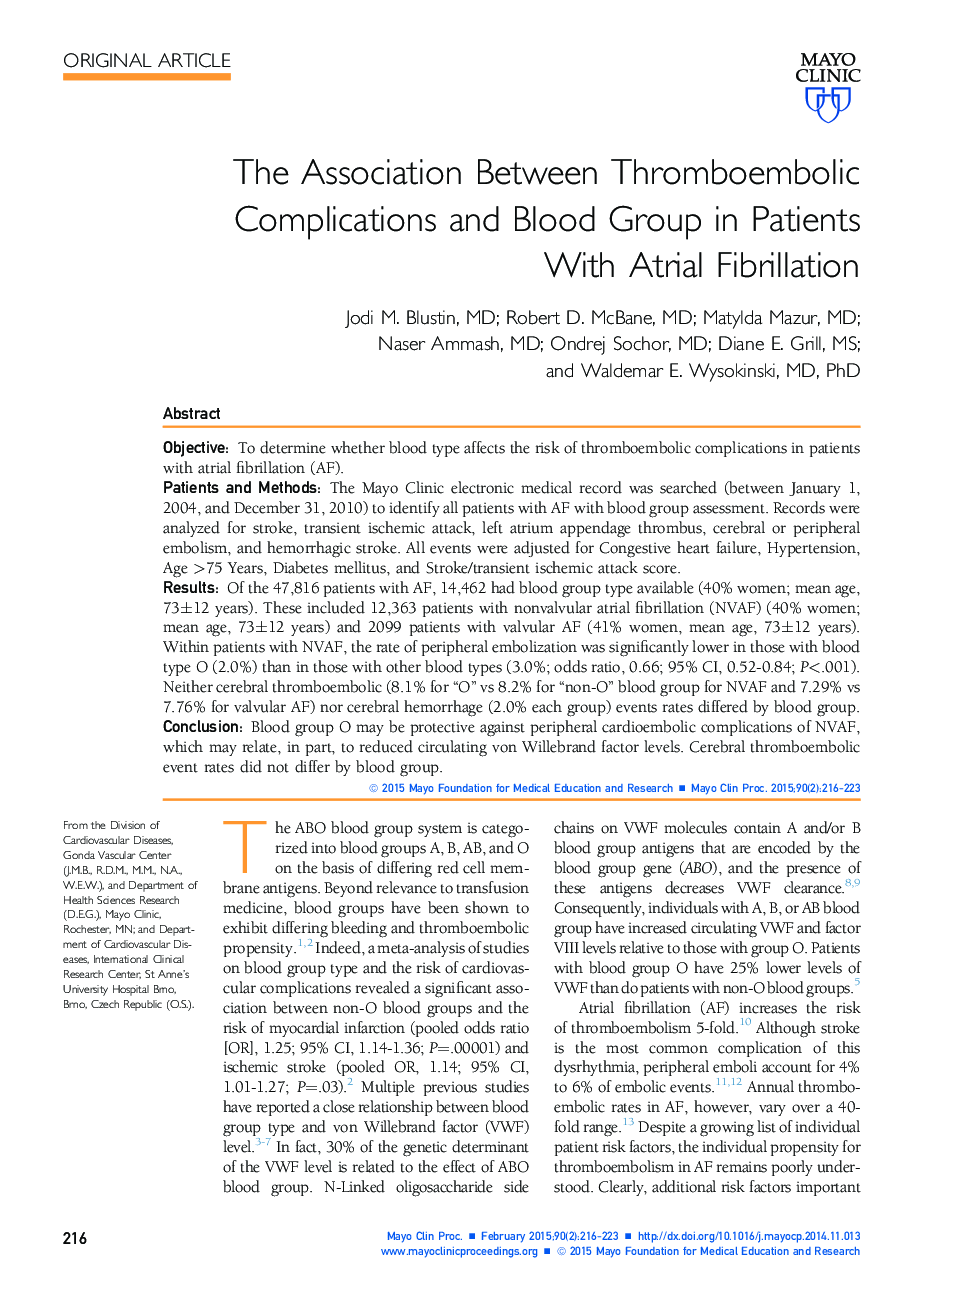 ارتباط بین عوارض ترومبو آمبولی و گروه خون در بیماران مبتلا به فیبریلاسیون دهلیزی 